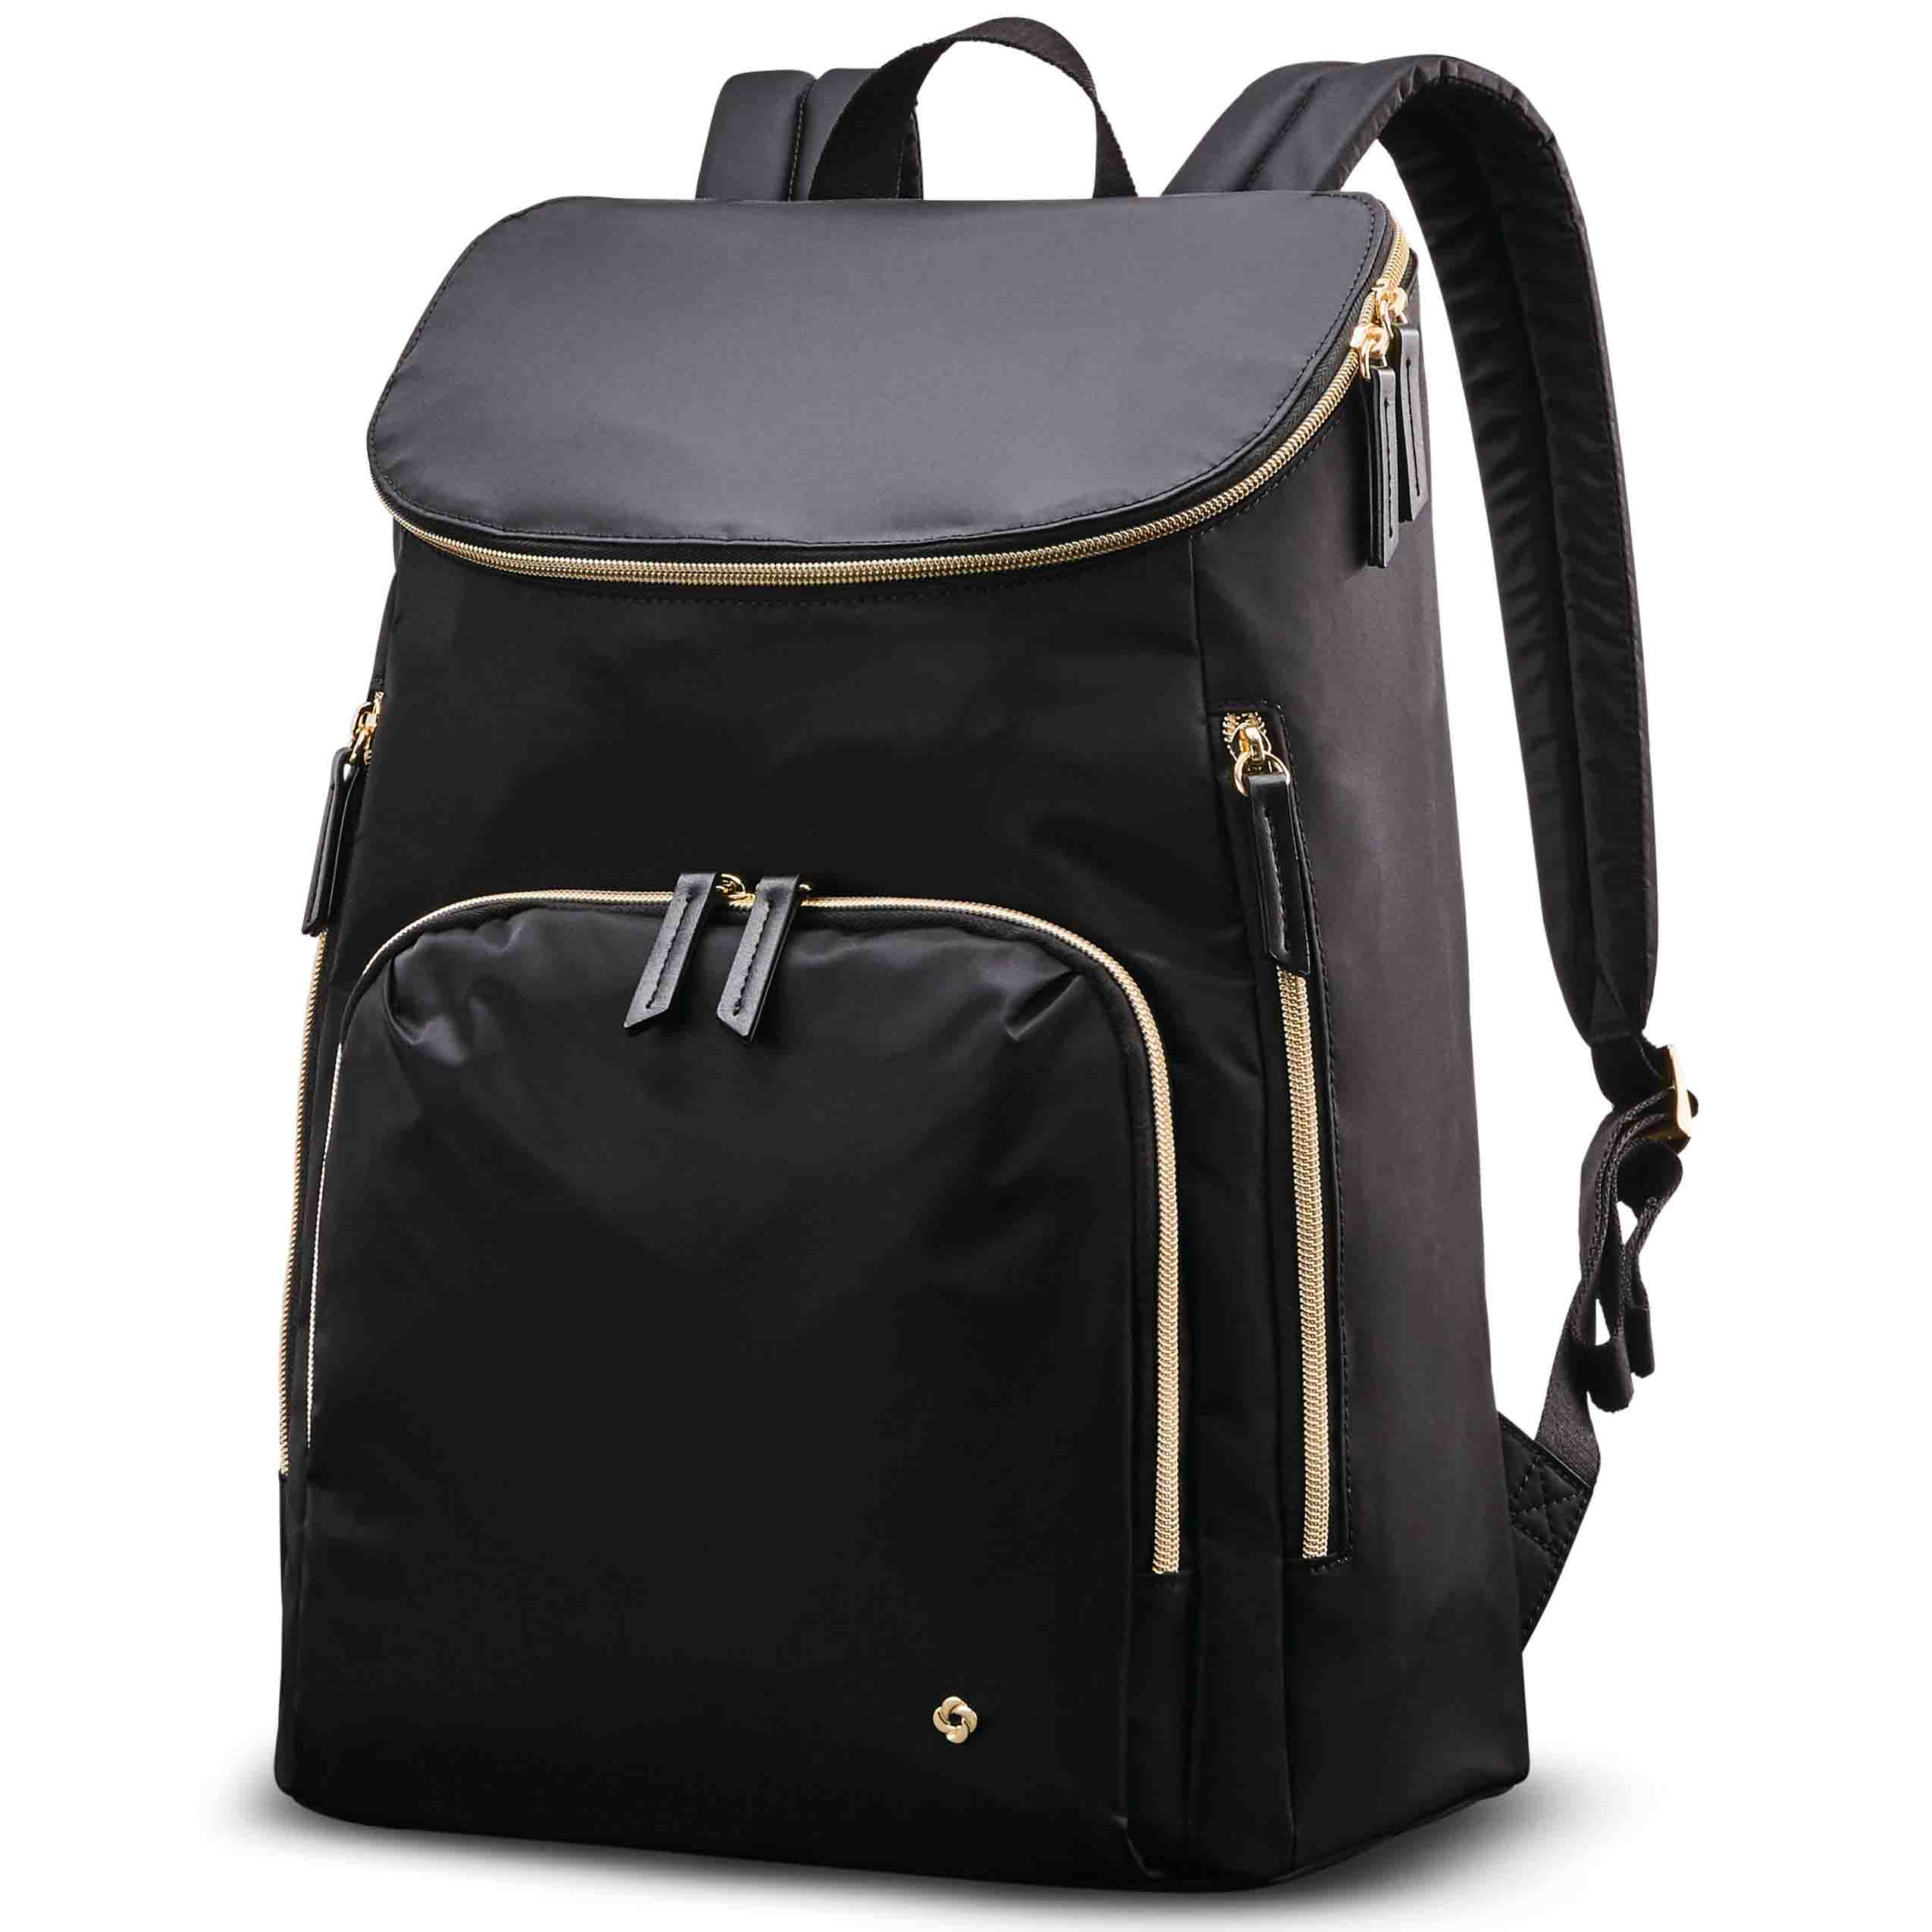 samsonite mobile solution deluxe backpack